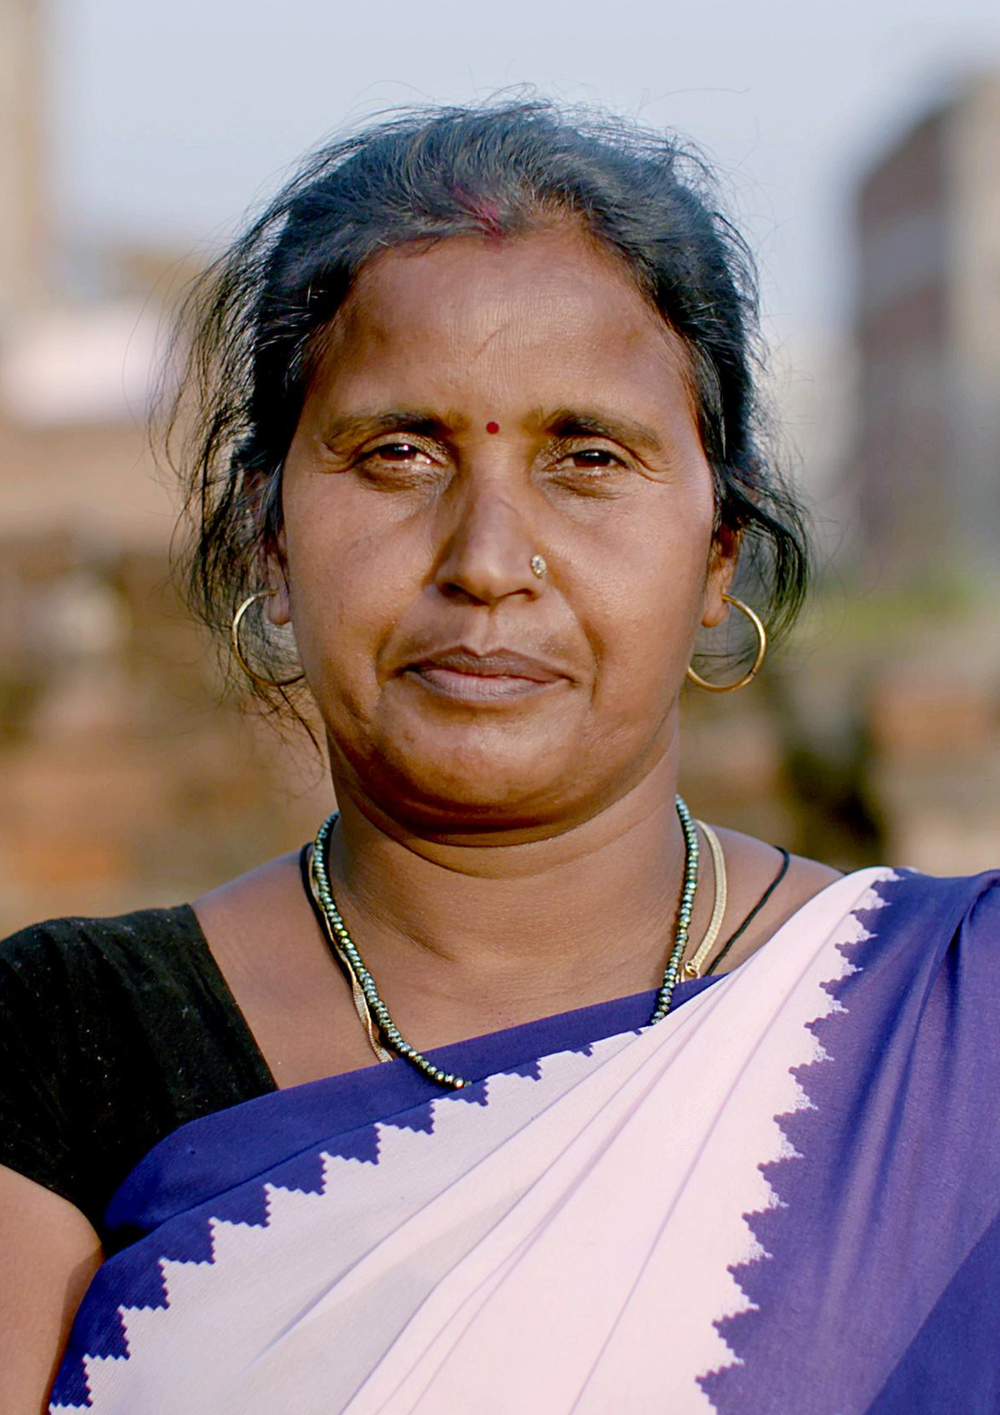 Manju lutte pour améliorer la santé des mères et nouveaux-nés avec le soutien de CARE en Inde.